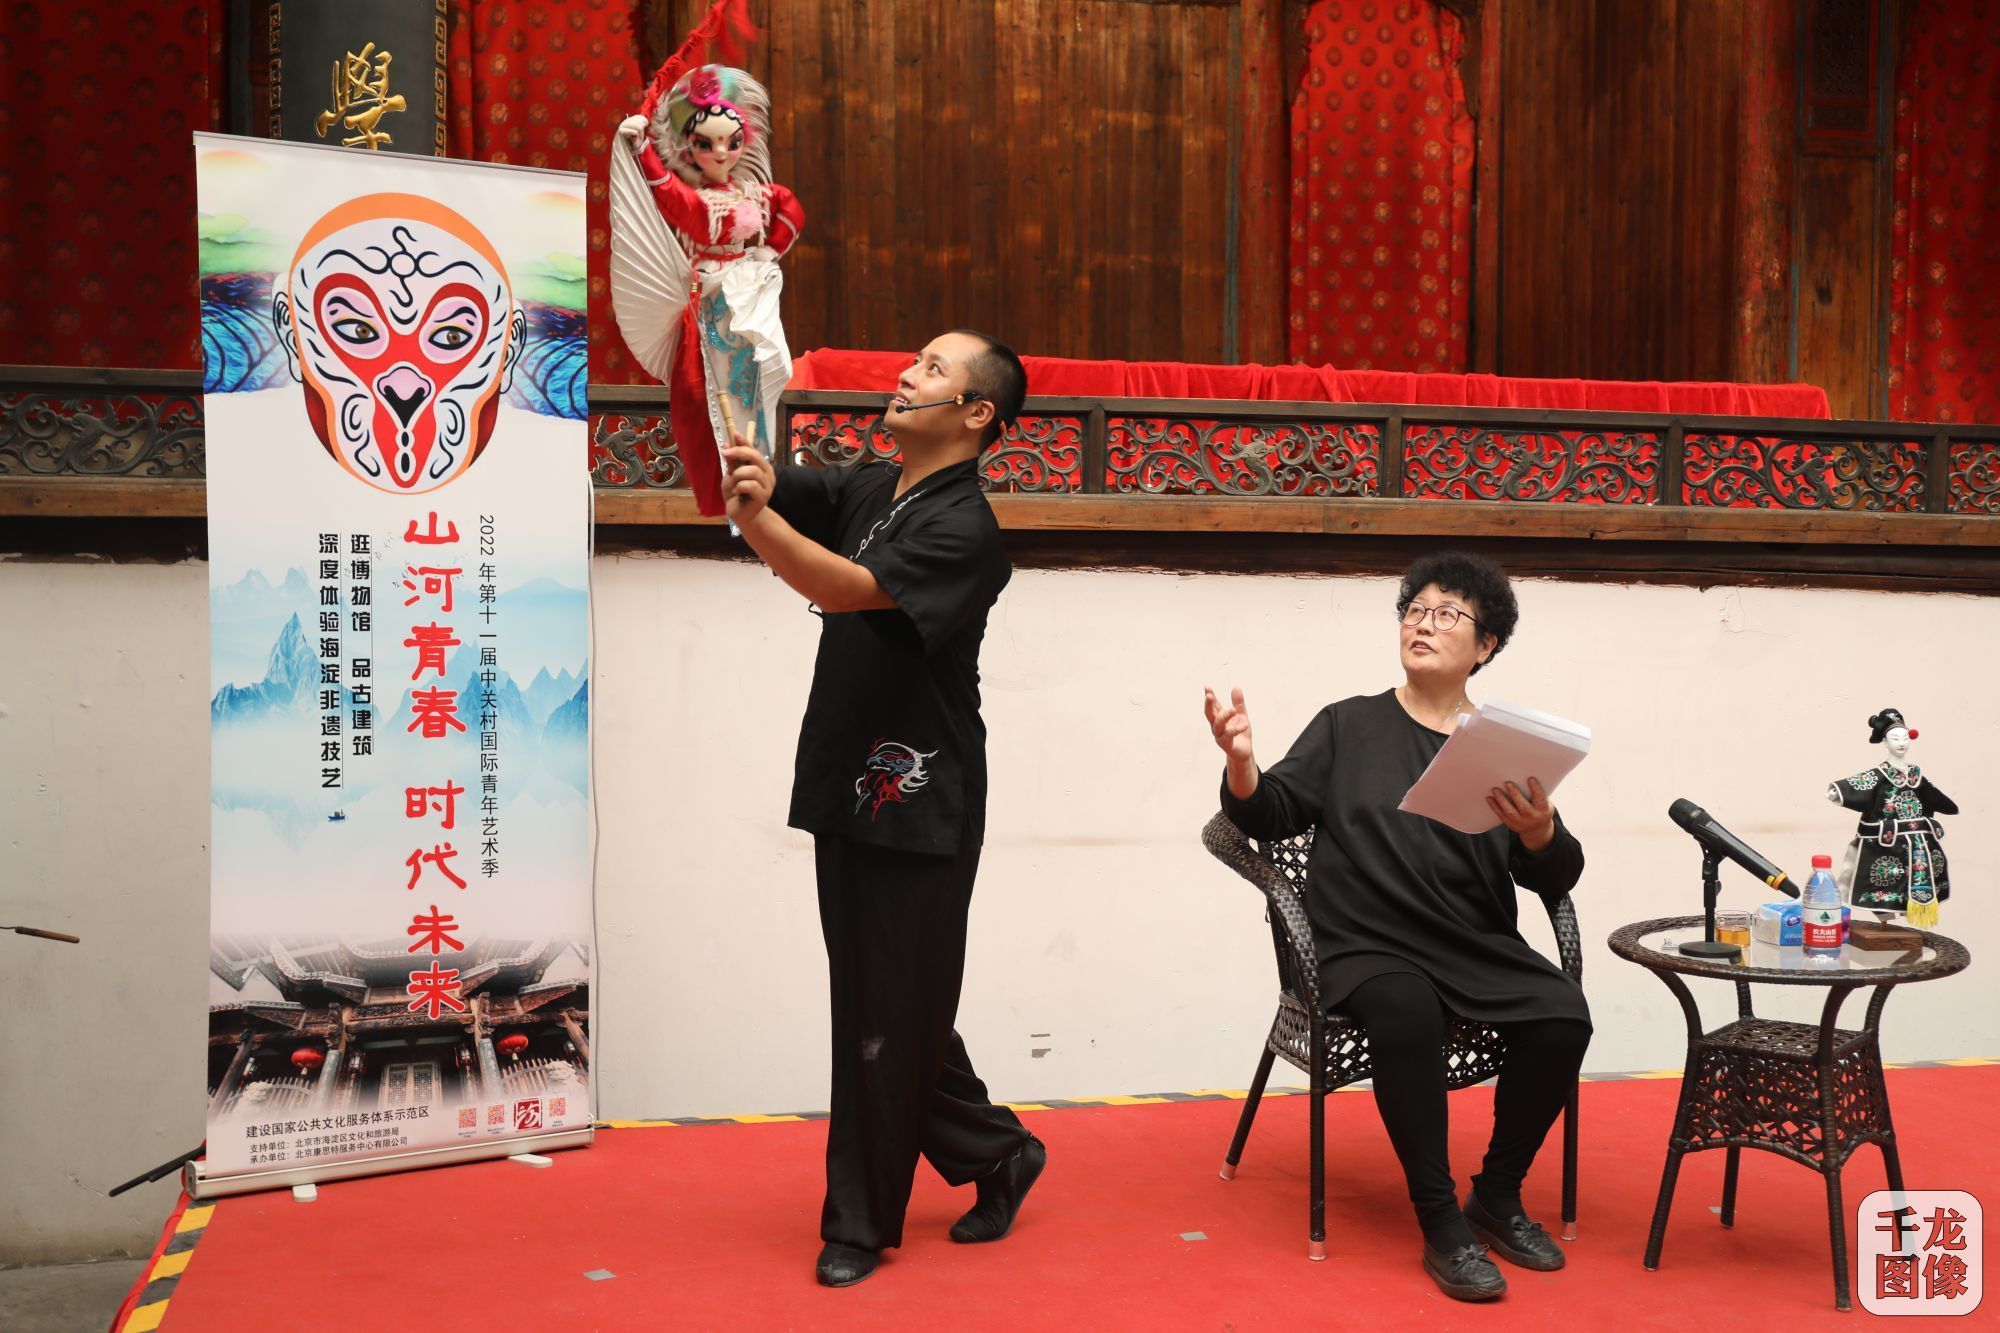 木偶表演走进北京中关村国际青年艺术季博得满堂彩